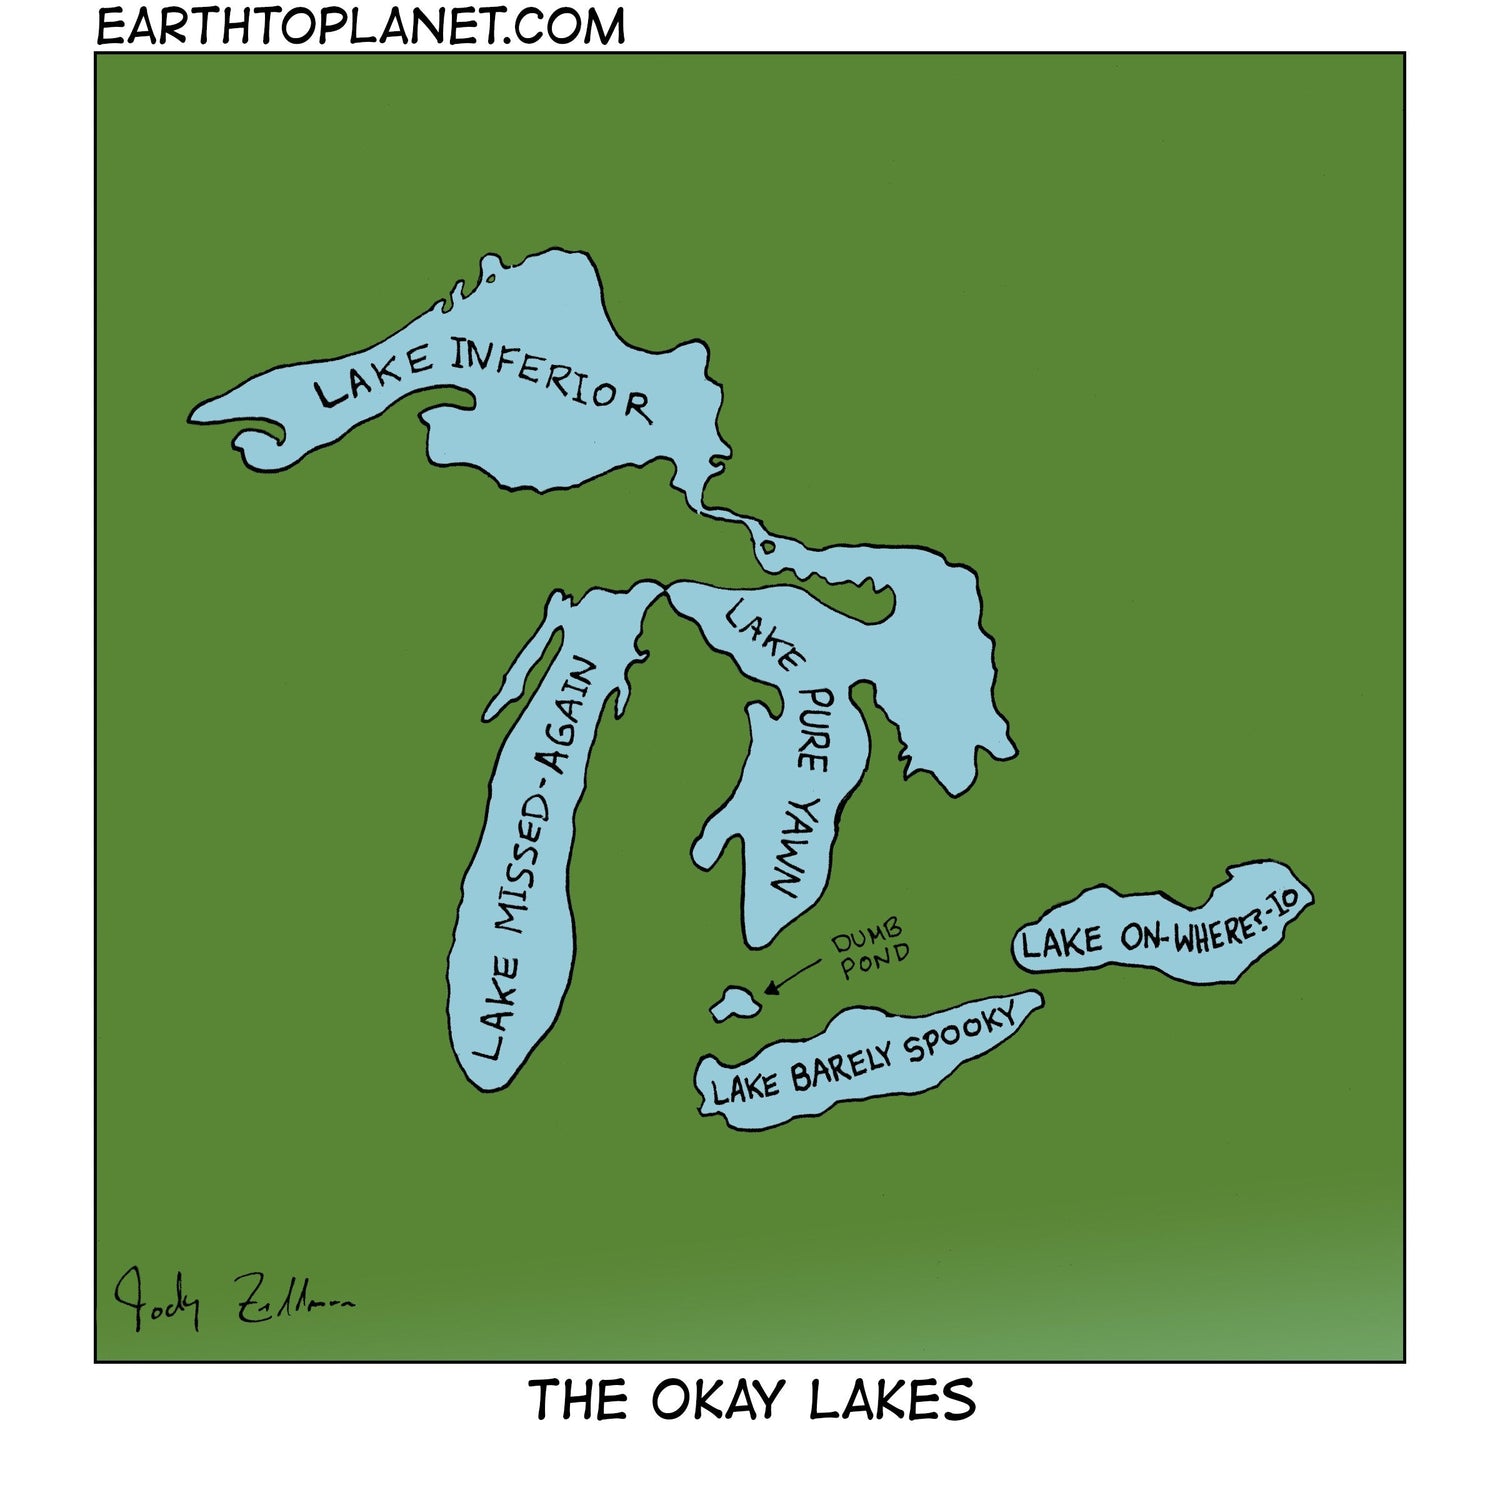 The Okay Lakes Cartoon